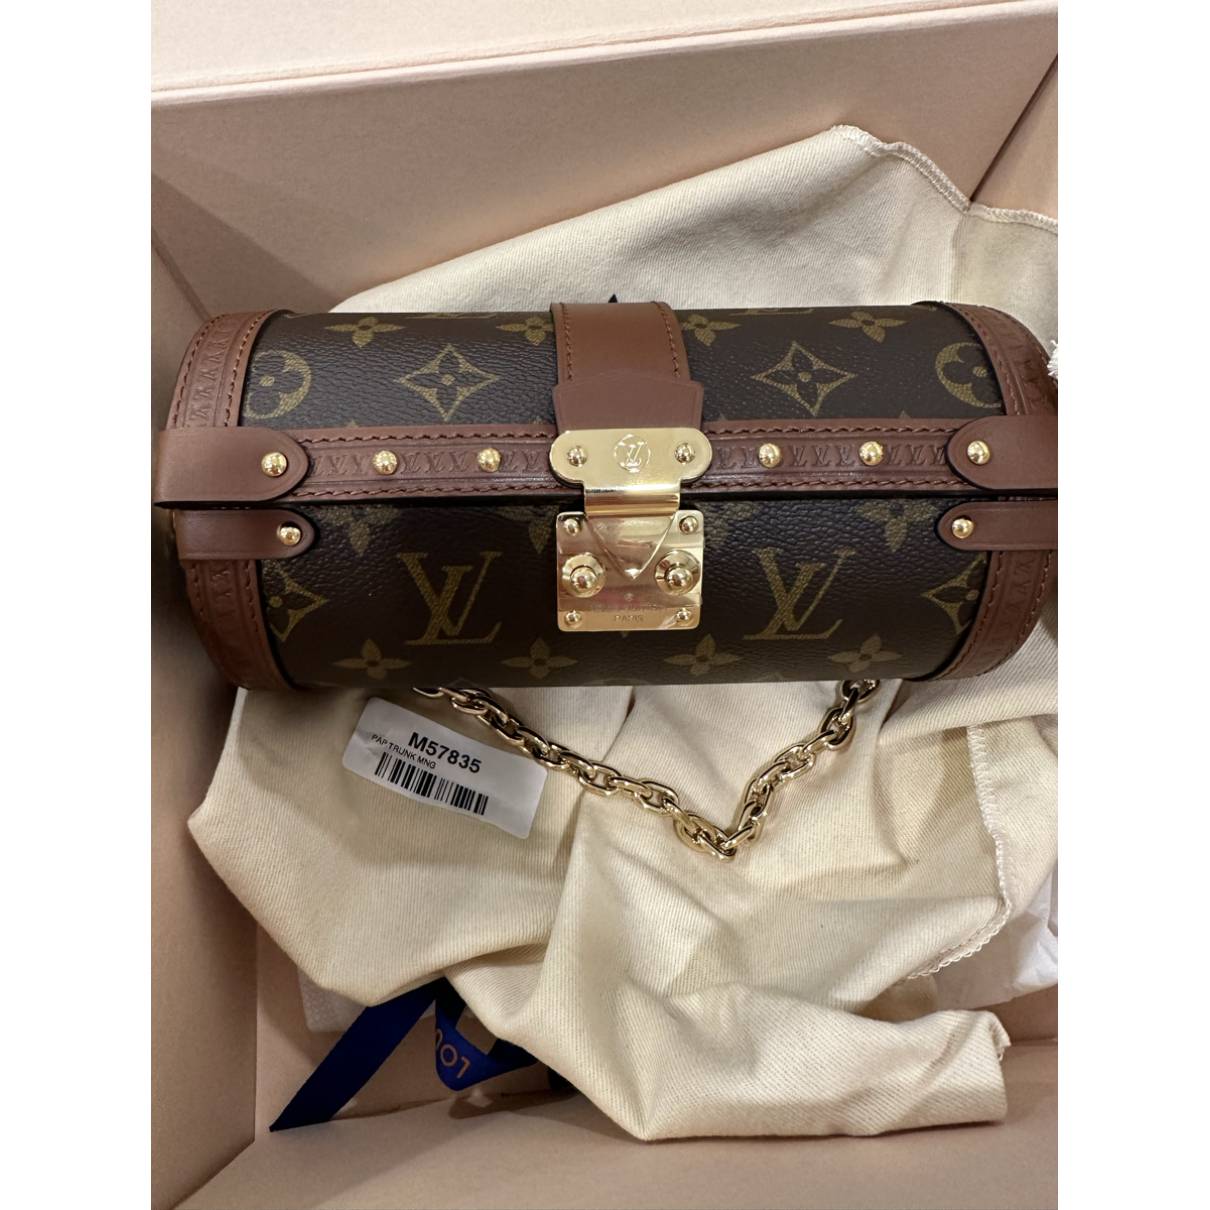 Louis Vuitton PAPILLON TRUNK BAG in 2023  Louis vuitton papillon, Trunk  bag, Brown handbag